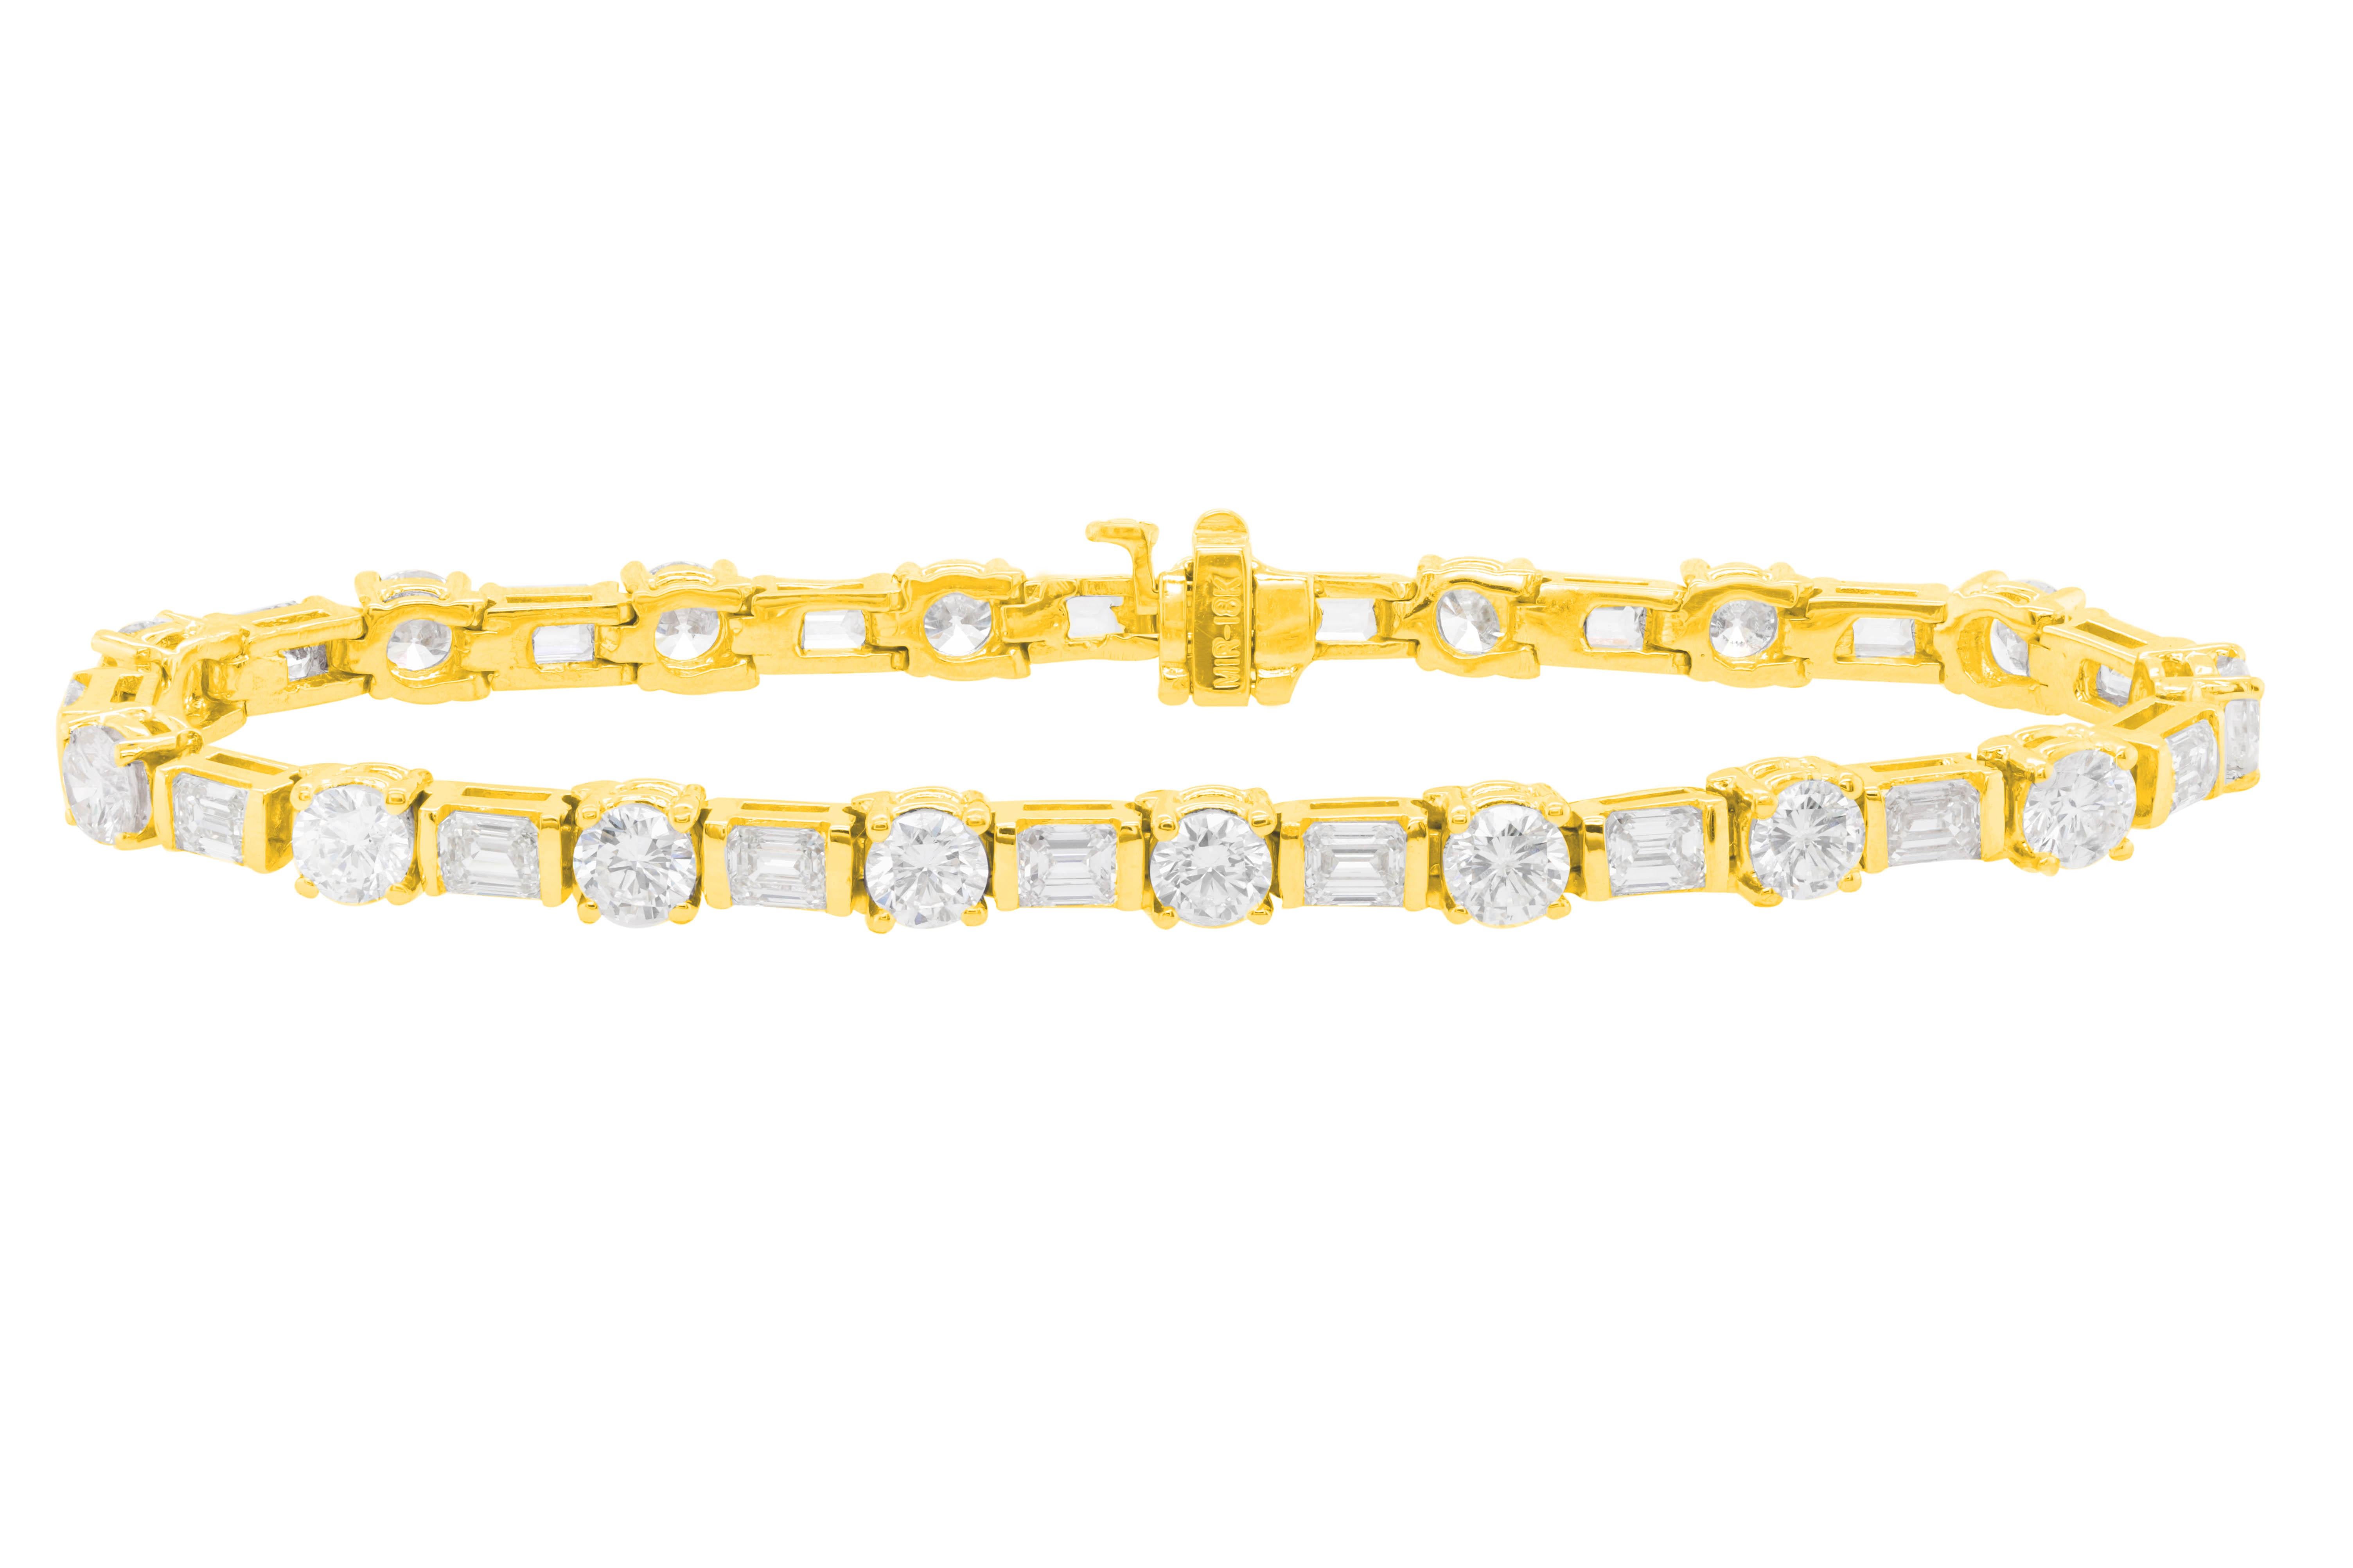 Diamant-Tennisarmband aus 18 kt Gelbgold mit 10,00 cts tw abwechselnd horizontal gefassten Diamanten im Baguetteschliff und runden Diamanten (34 Steine)
Diana M. ist seit über 35 Jahren ein führender Anbieter von hochwertigem Schmuck.
Diana M ist